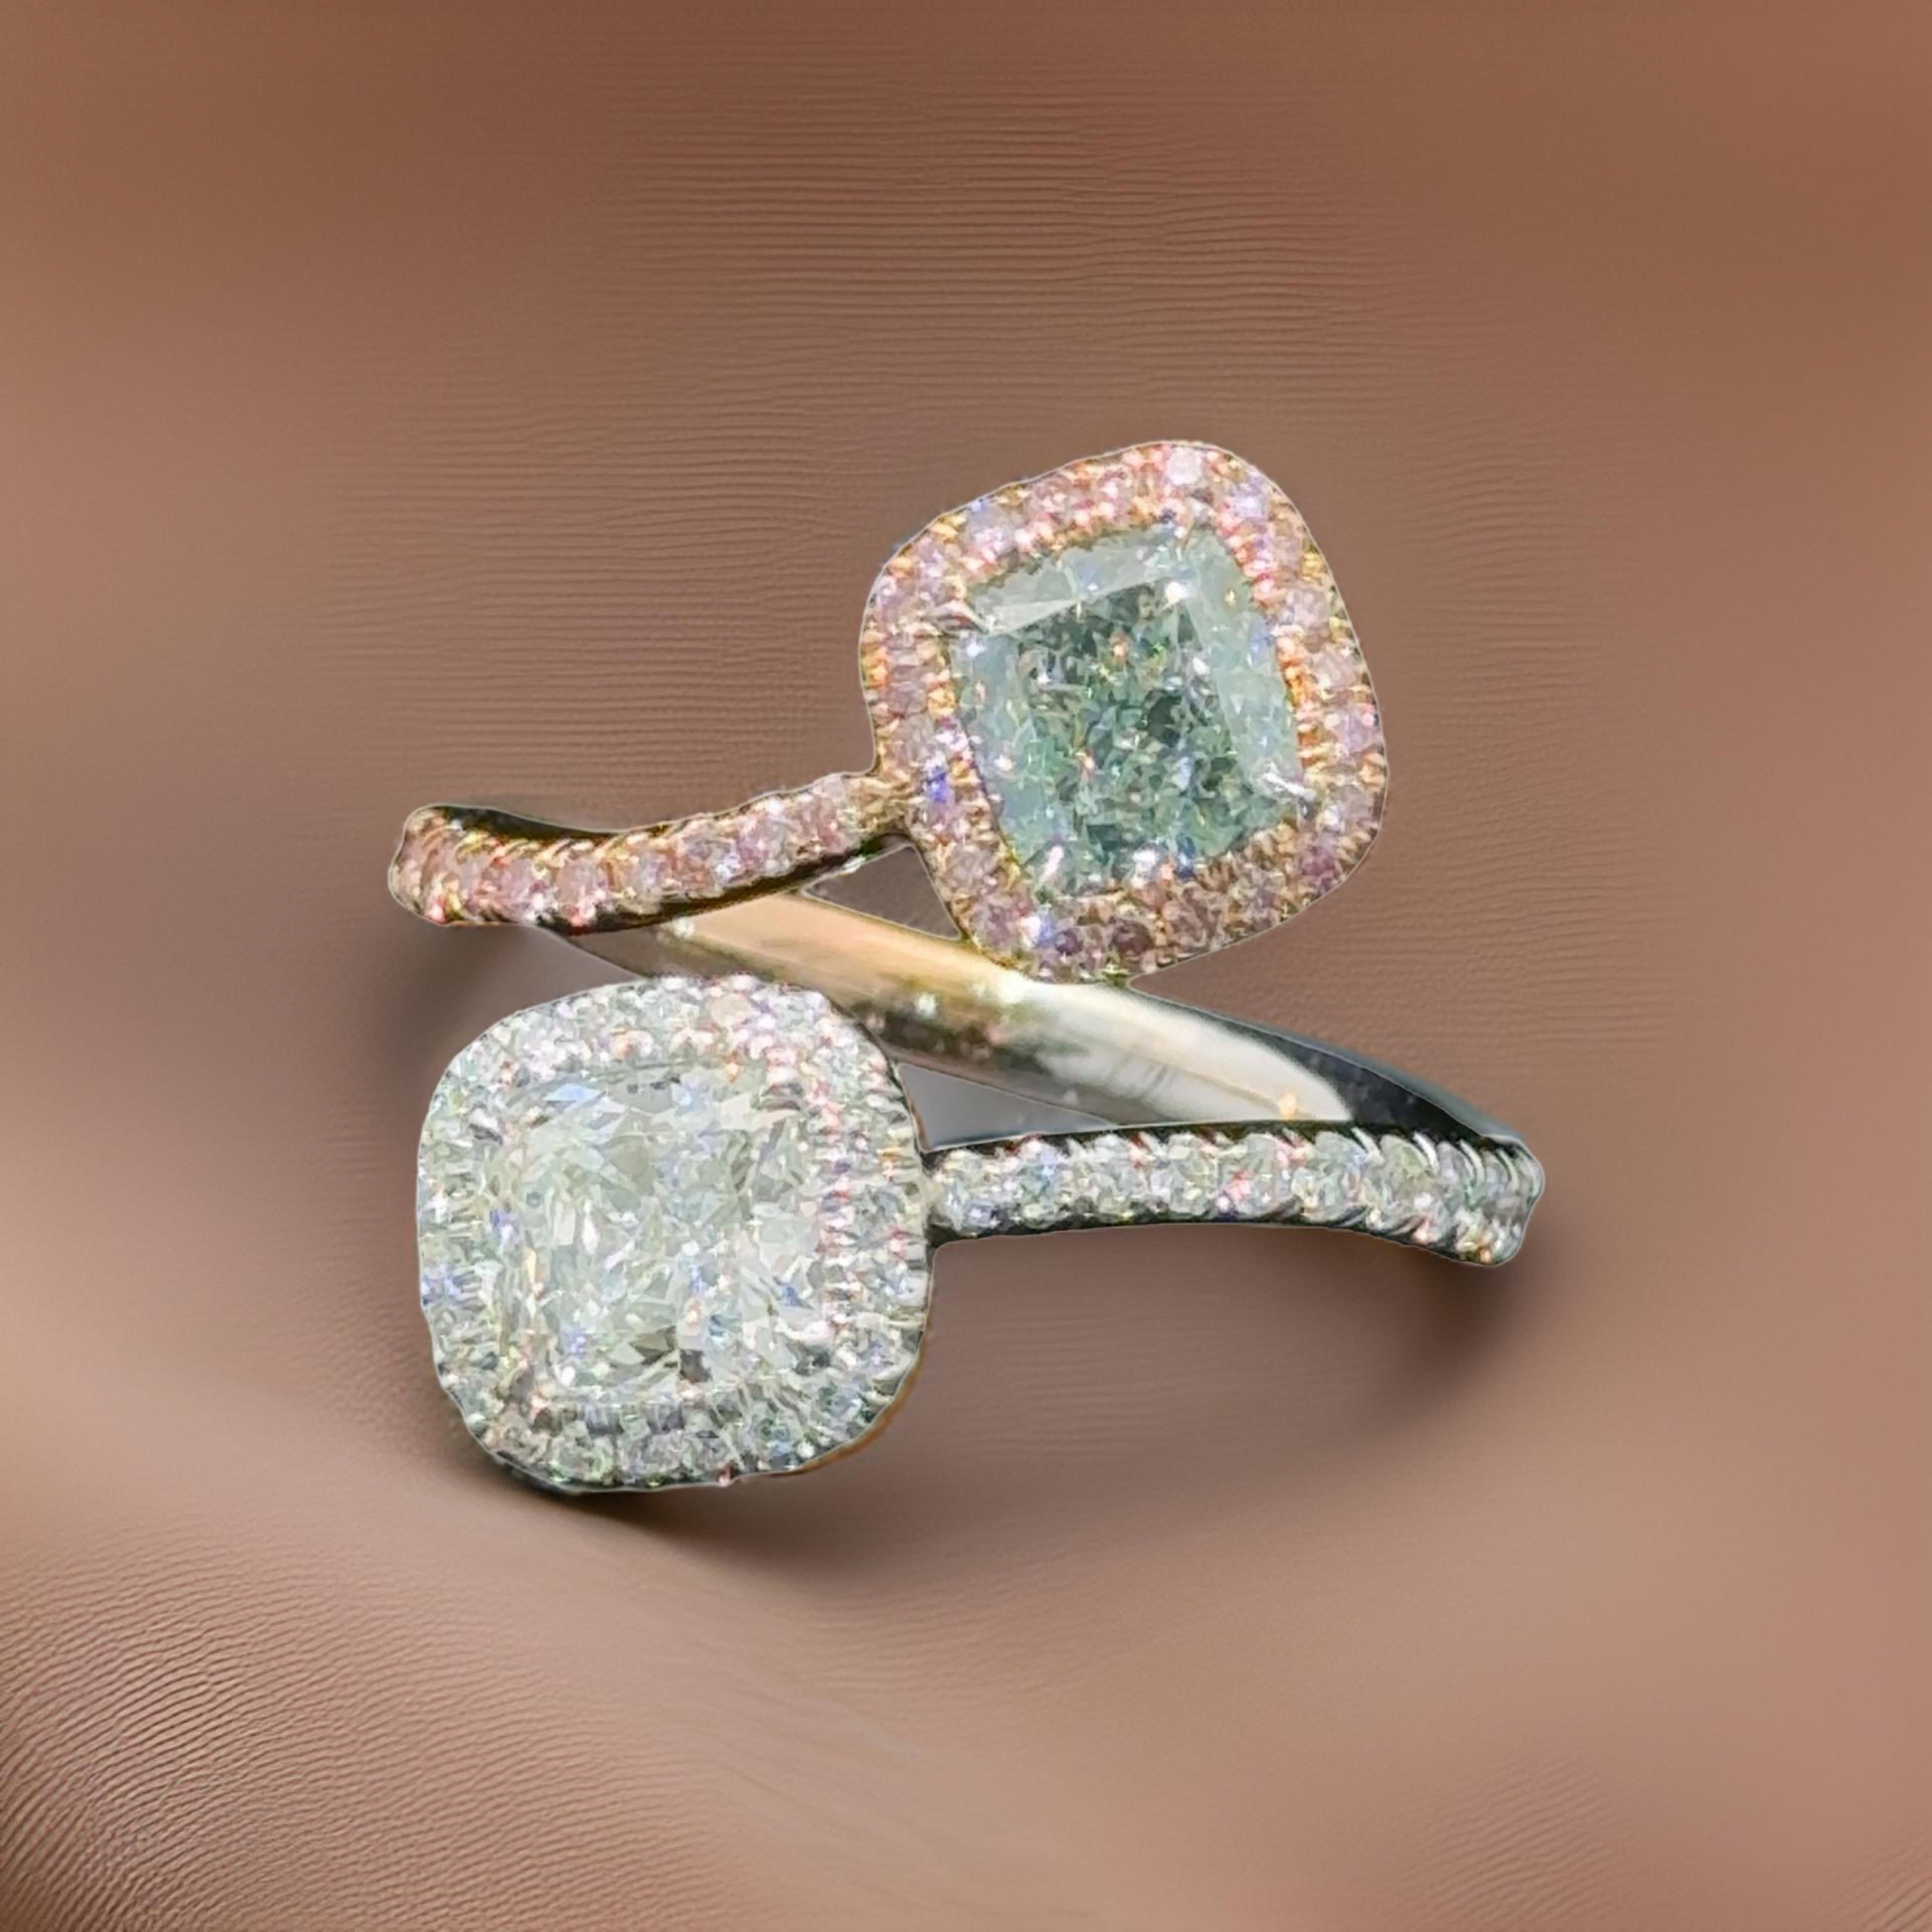 Les diamants verts naturels de couleur fantaisie sont une rareté de la nature ! Les diamants verts sont le plus souvent de couleur secondaire. 
Notre taille coussin verte naturelle est classée STRAIGHT Fancy Light Green par le Gemological Institute